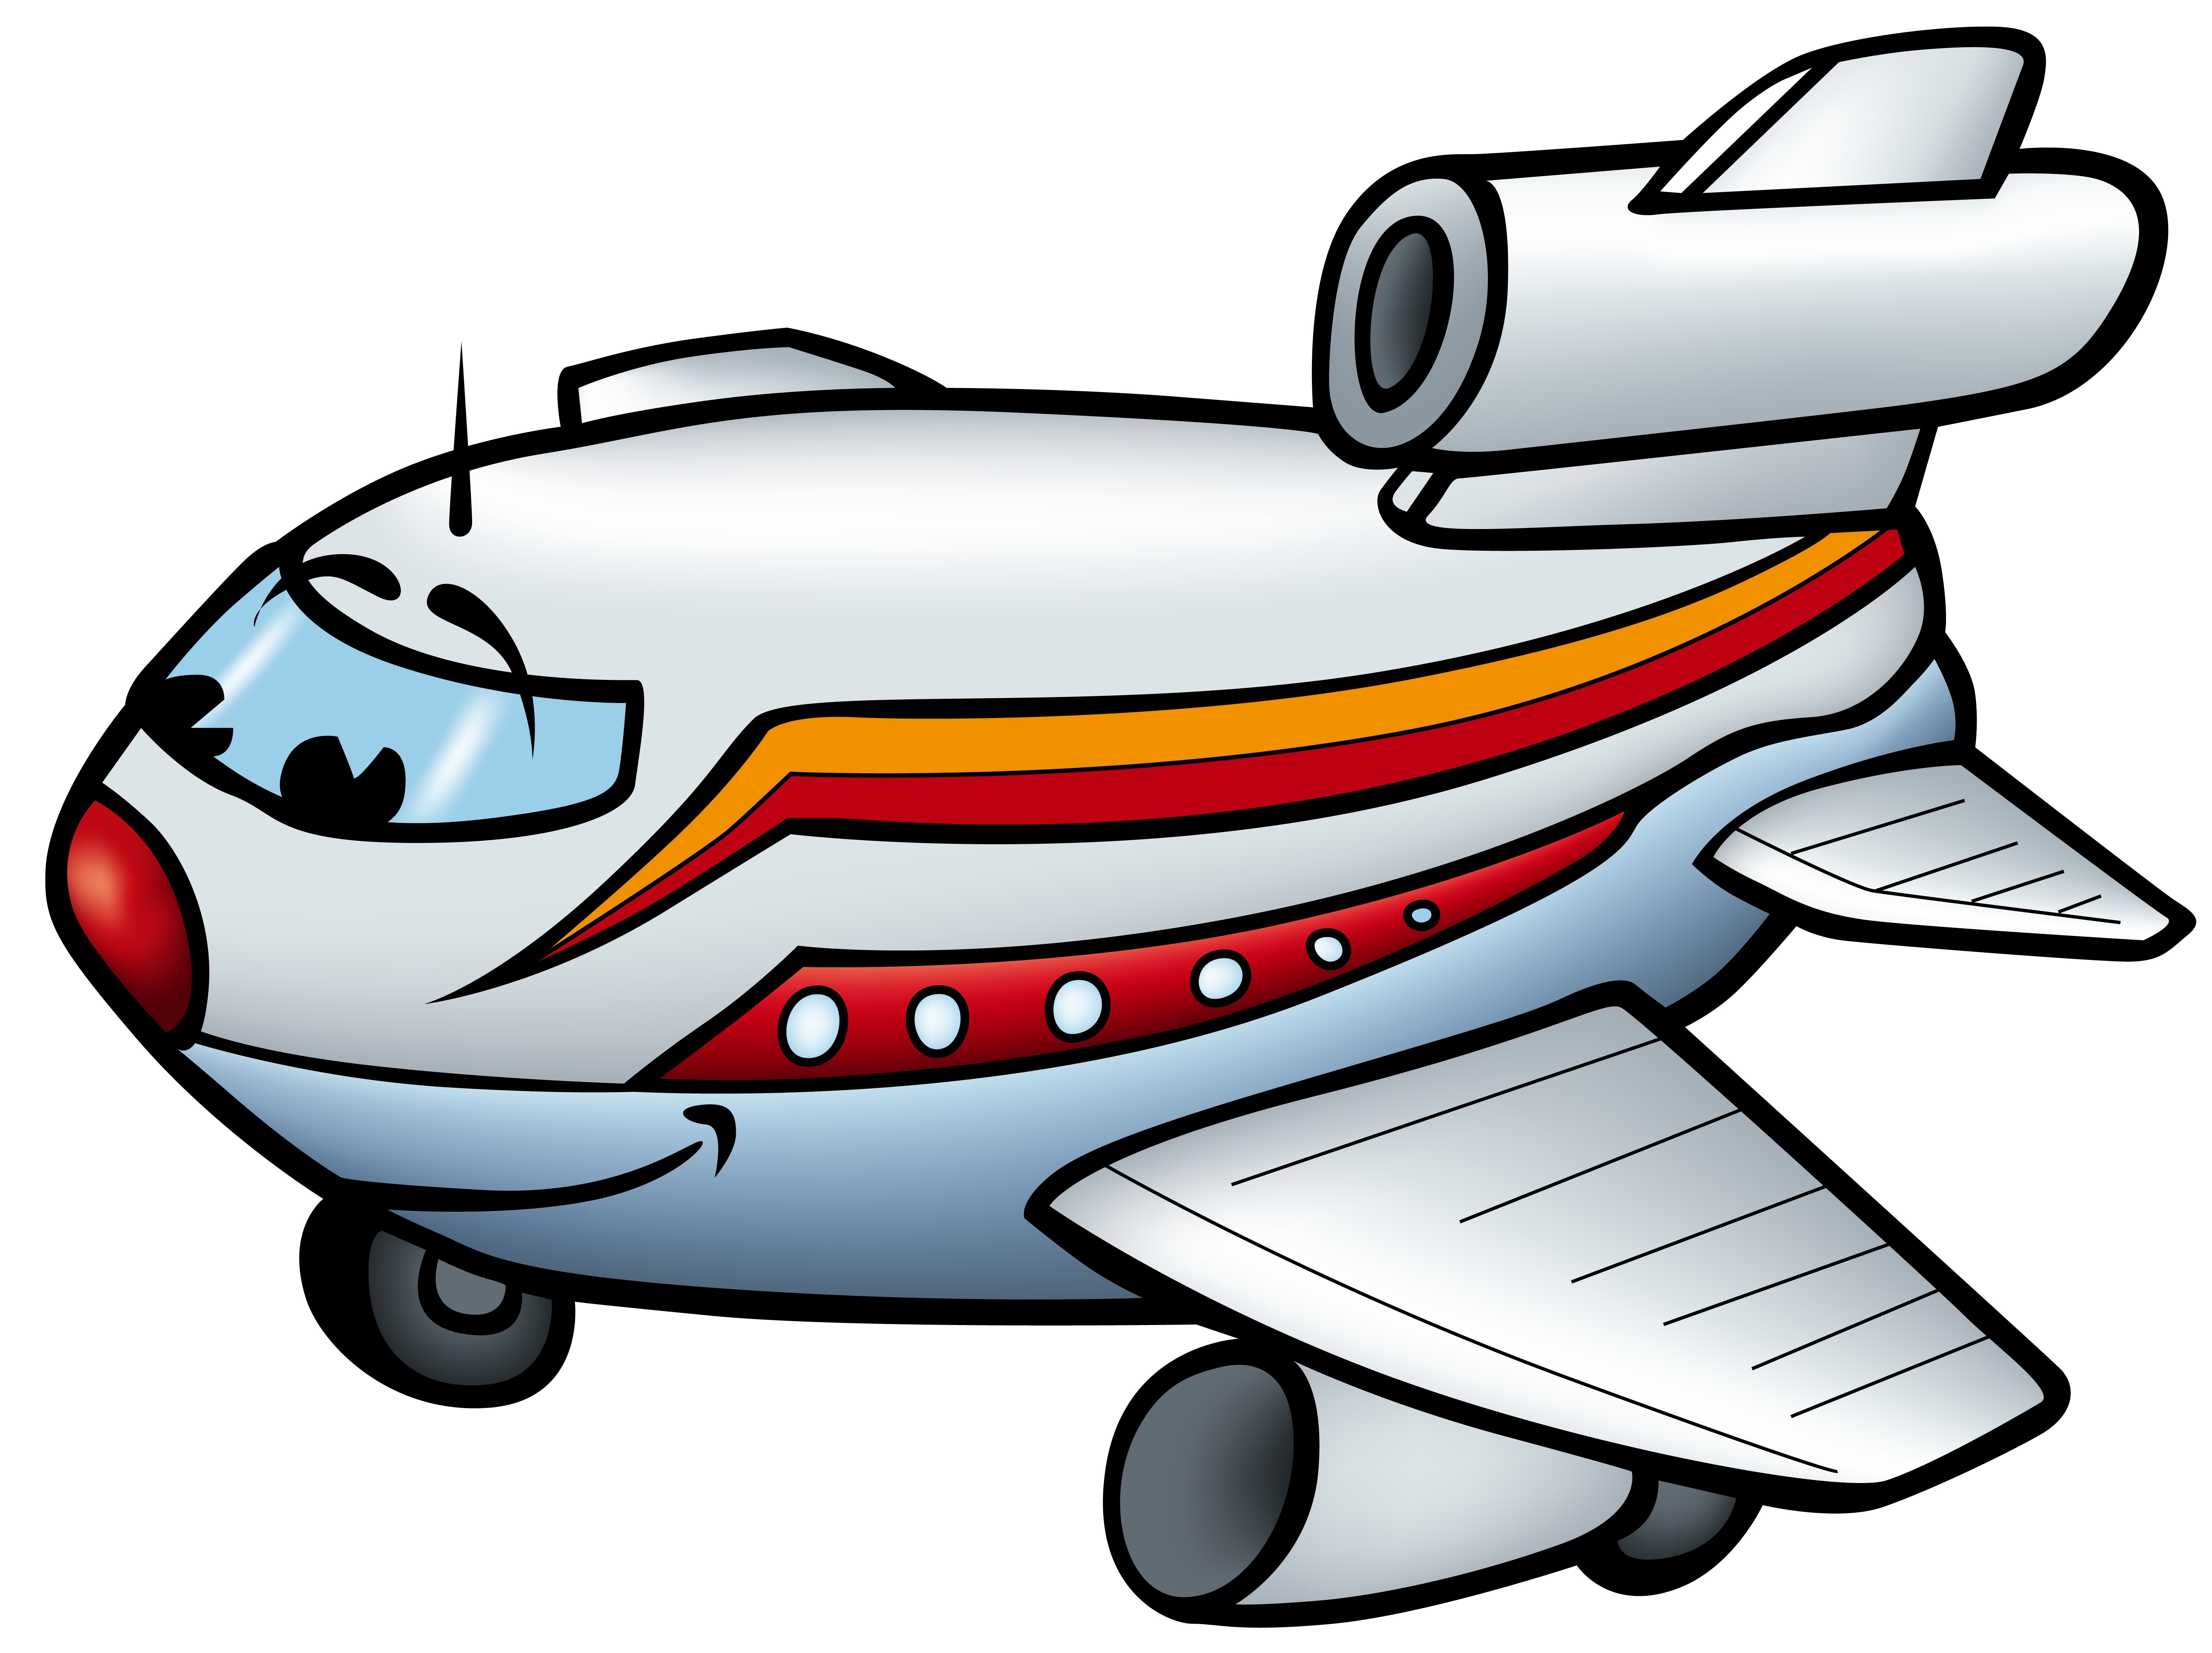 Free Cartoon Aeroplane, Download Free Cartoon Aeroplane png images